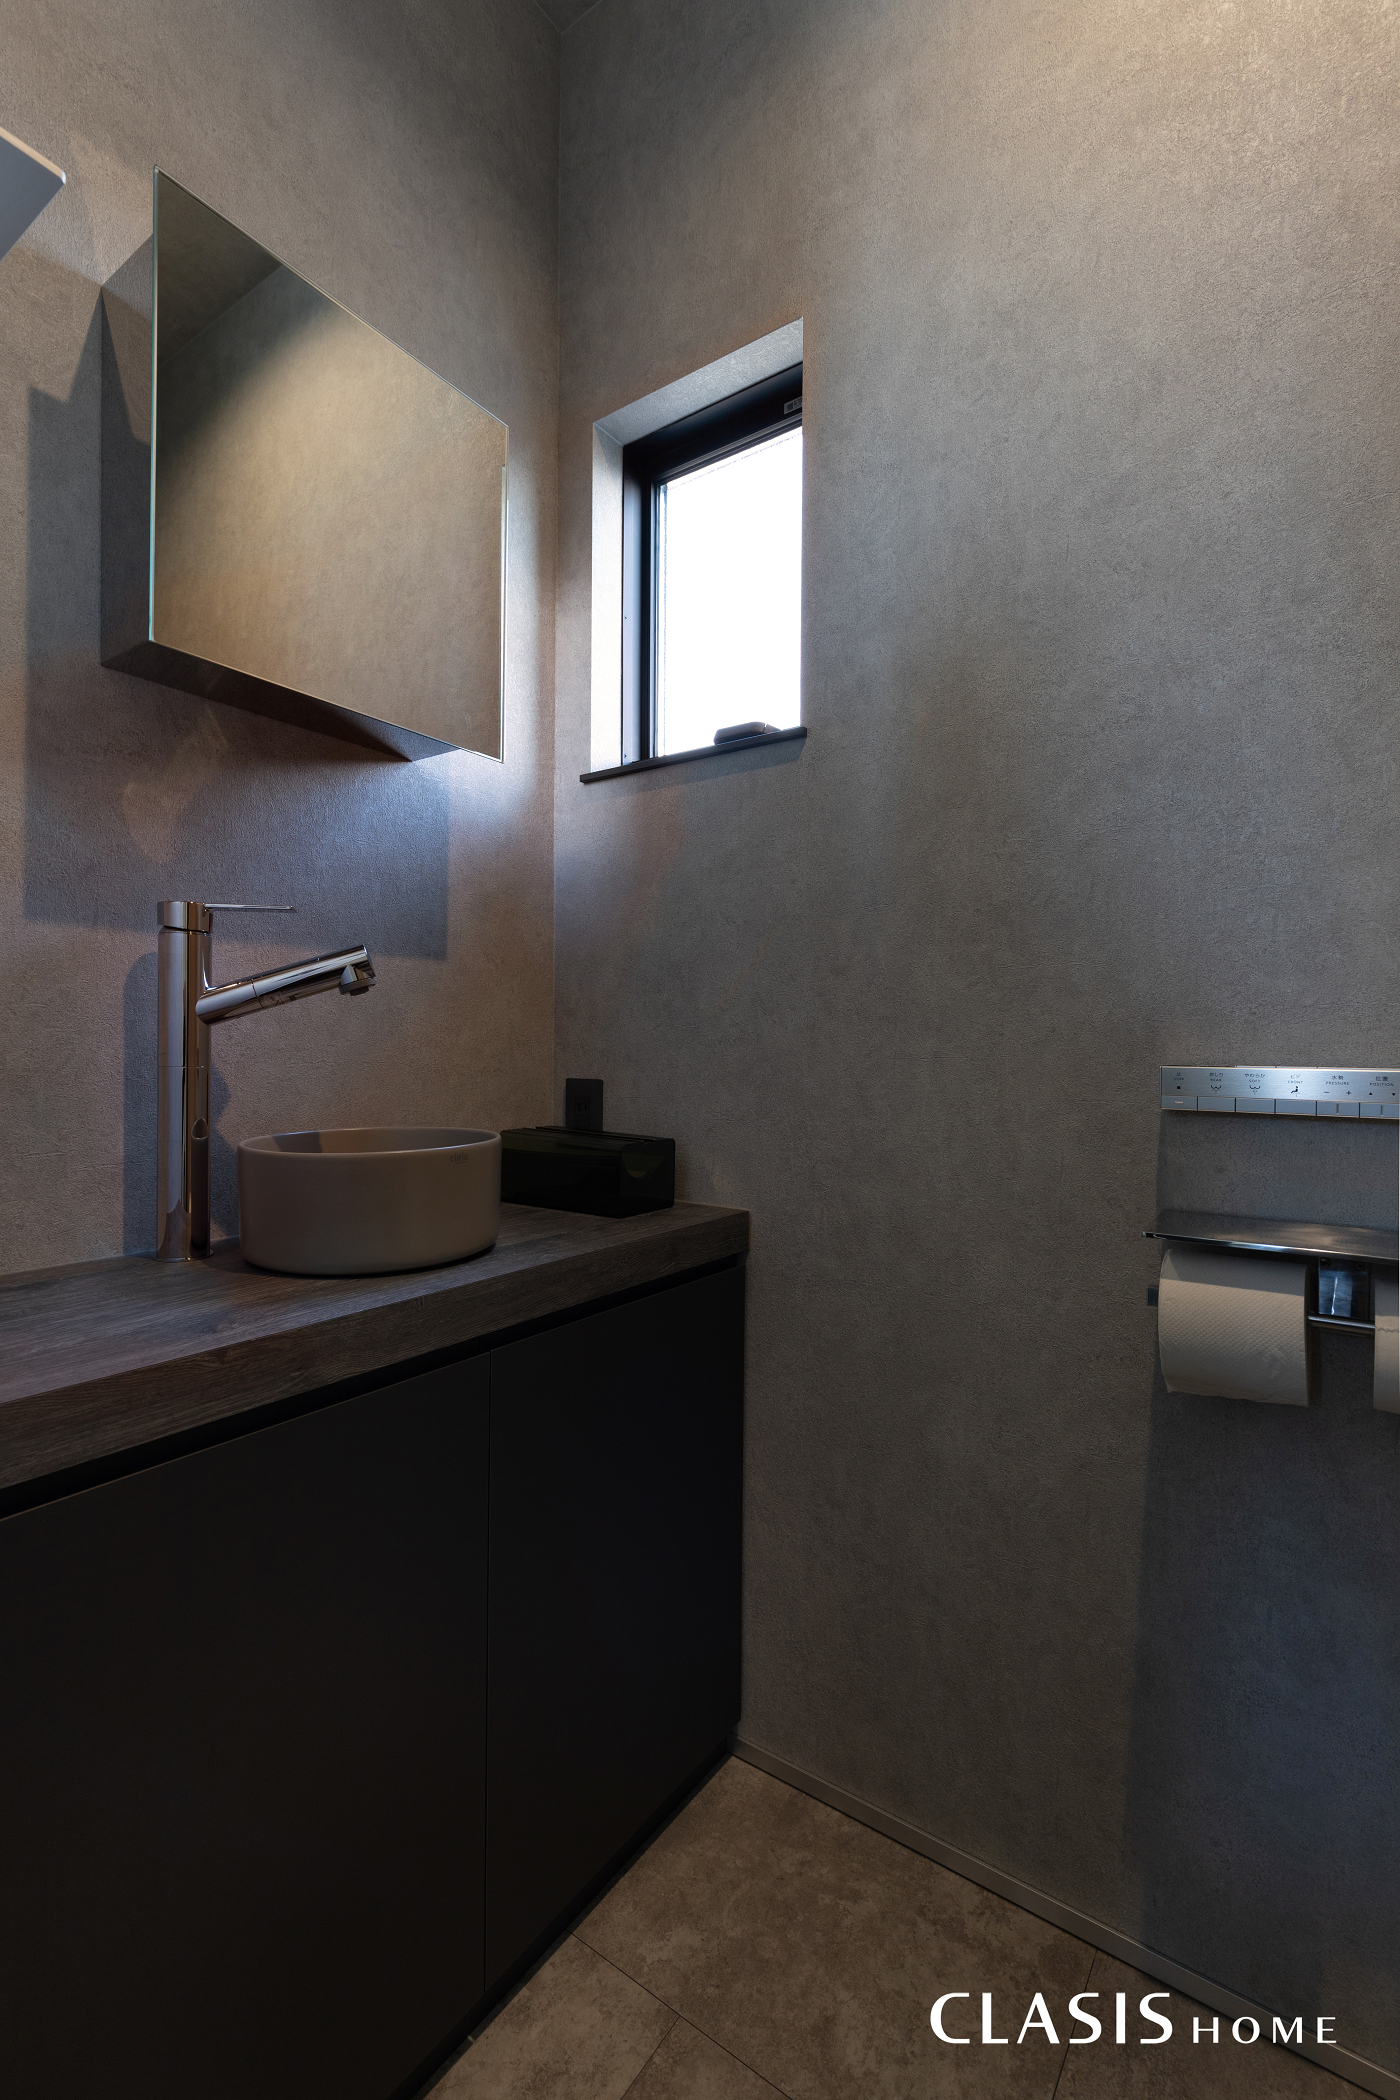 2階のトイレはグレーで統一感がありつつも、色味や設備で温かさをプラス。